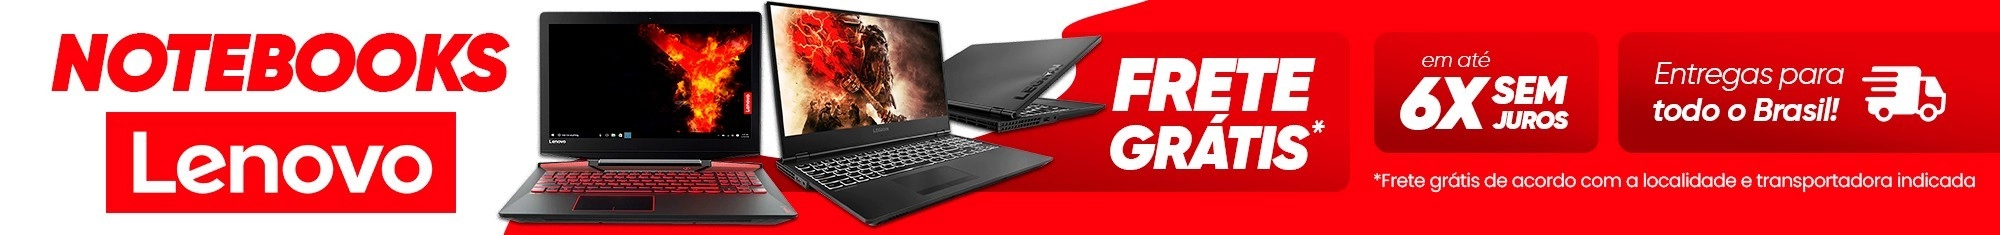 Notebook Lenovo - Promoção Até 50% OFF | Saldão da Informática